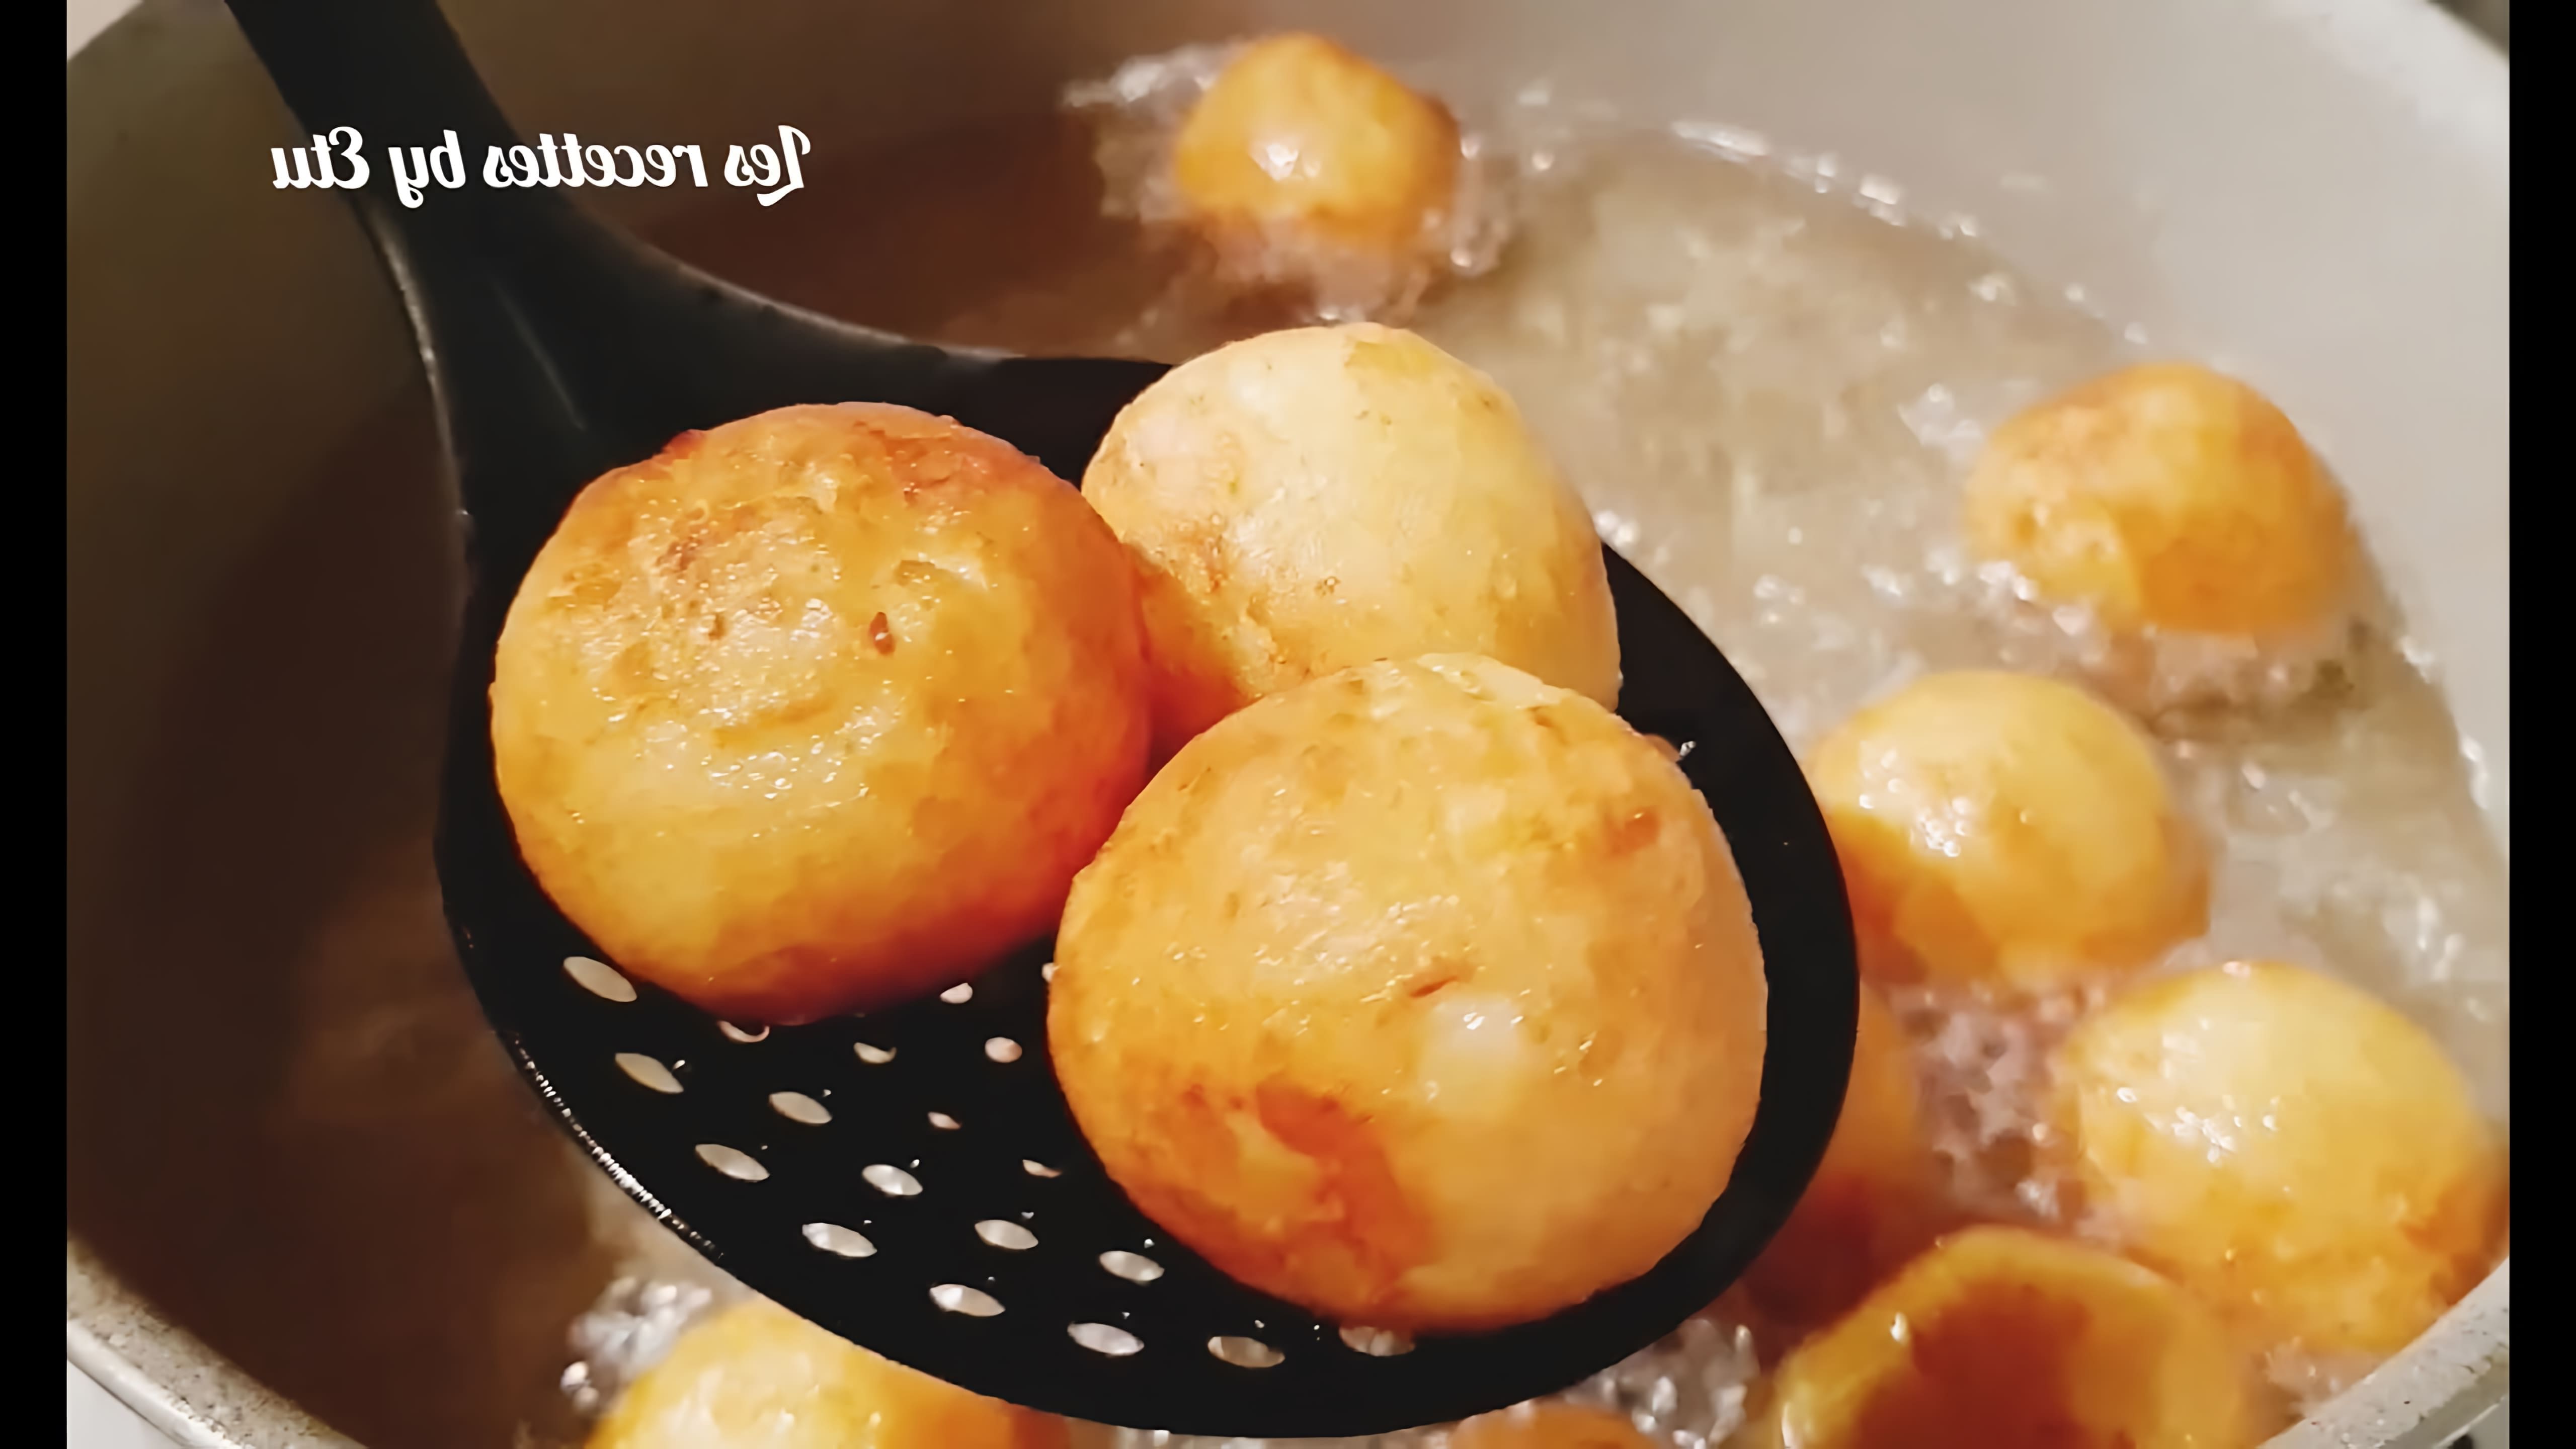 В этом видео-ролике вы увидите, как приготовить хрустящие, жаренные картофельные шарики всего из двух ингредиентов - картошки и муки